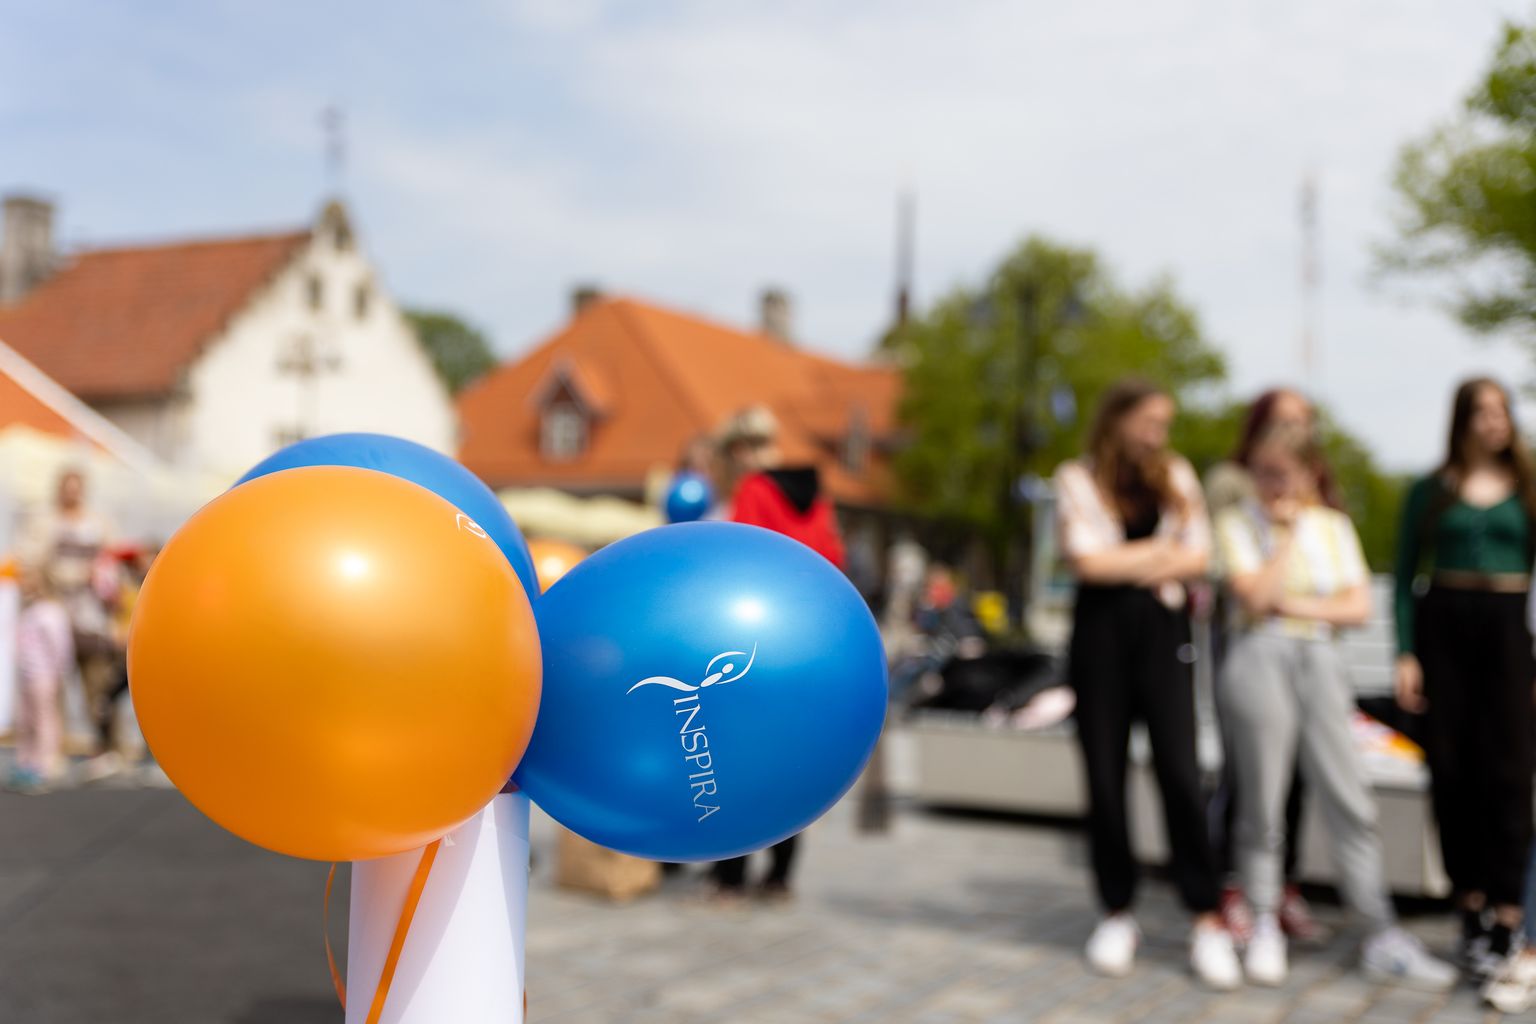 Lastekaitsepäeva tegevused Kuressaares 1. juunil 2022.